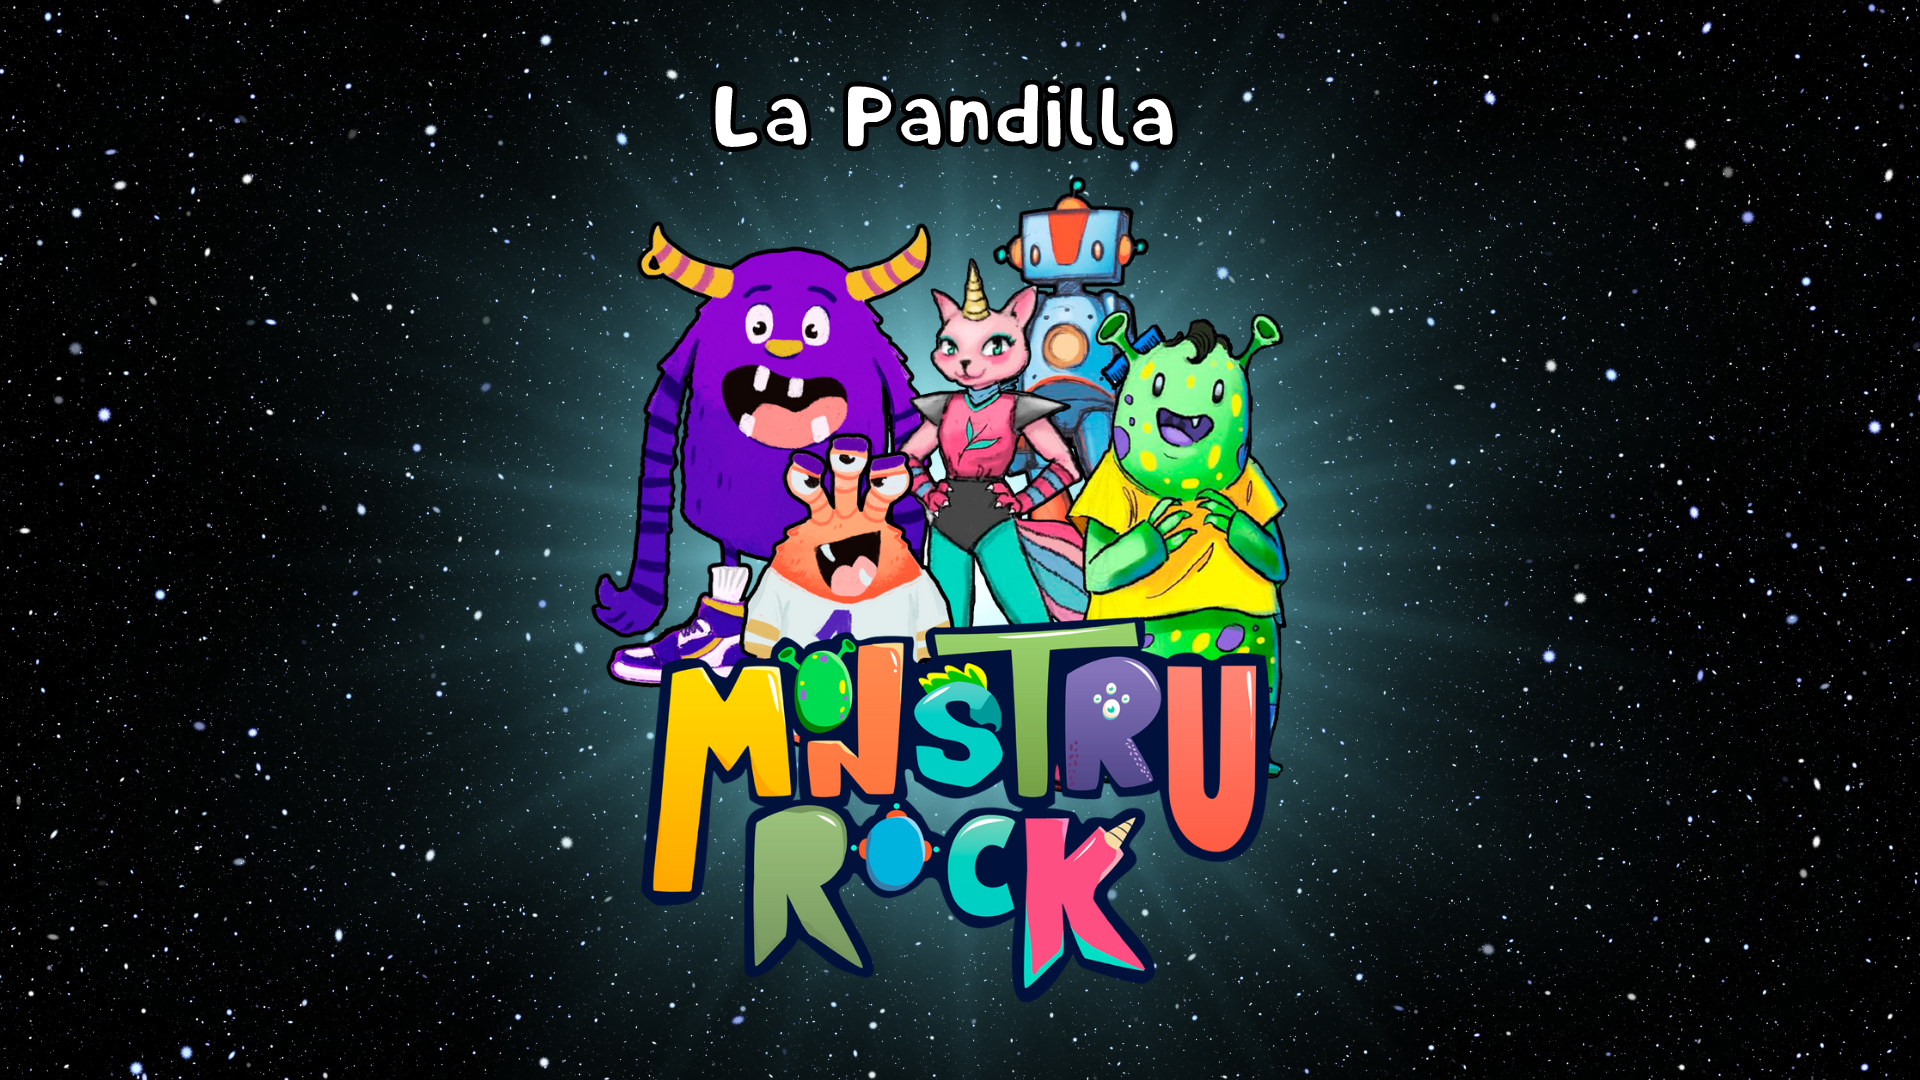 La Pandilla Monstrurock es un espectáculo infantil de música en directo para niñas y niños de planeta Tierra que se estrena en Sevilla el 27 de noviembre de 2022